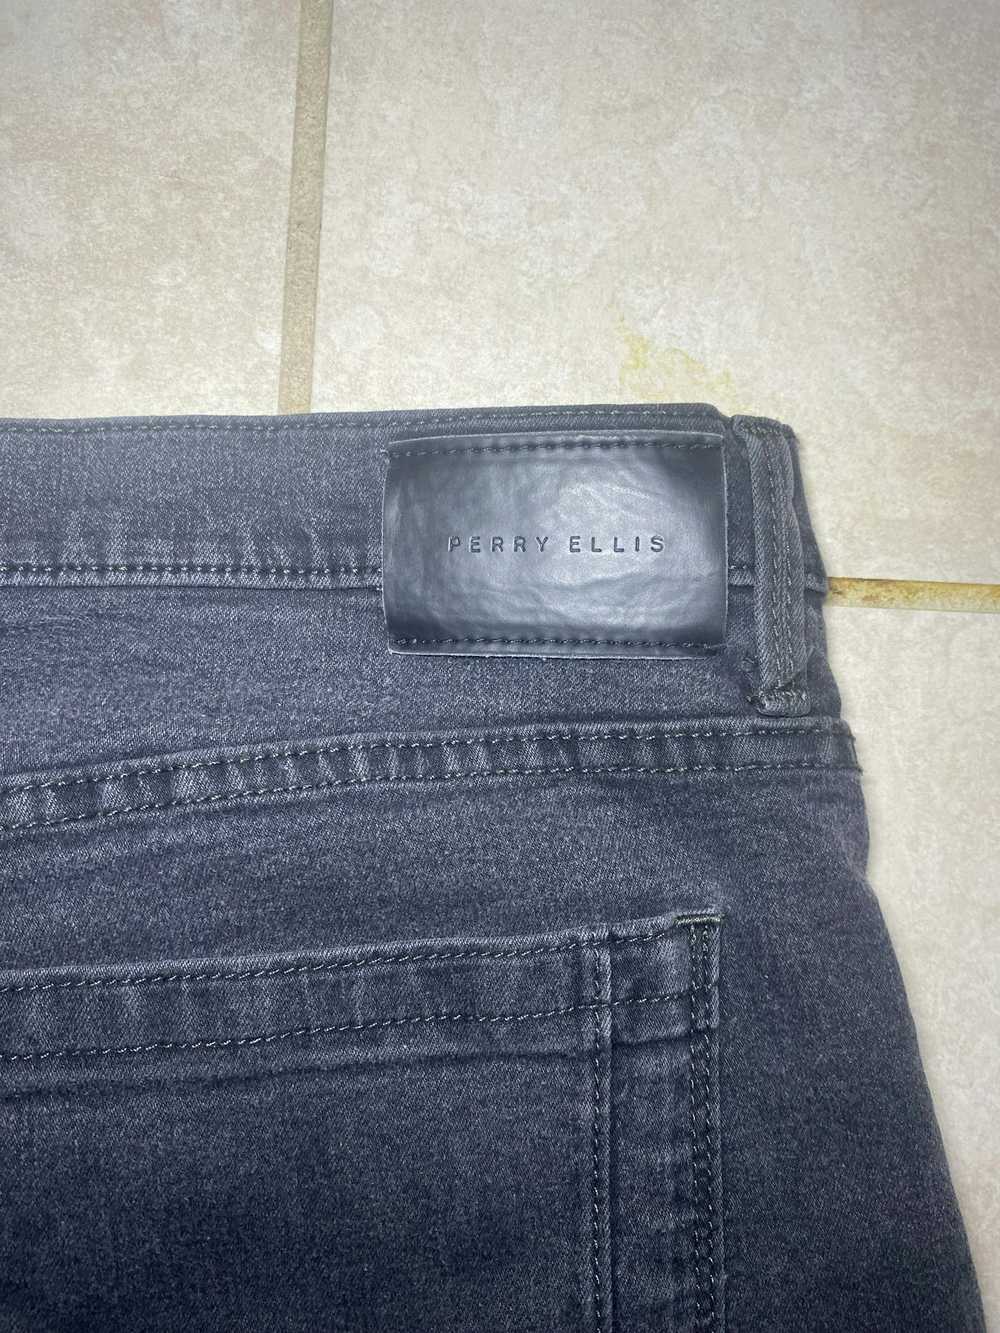 Perry Ellis Perry Ellis Grey Jeans - image 3